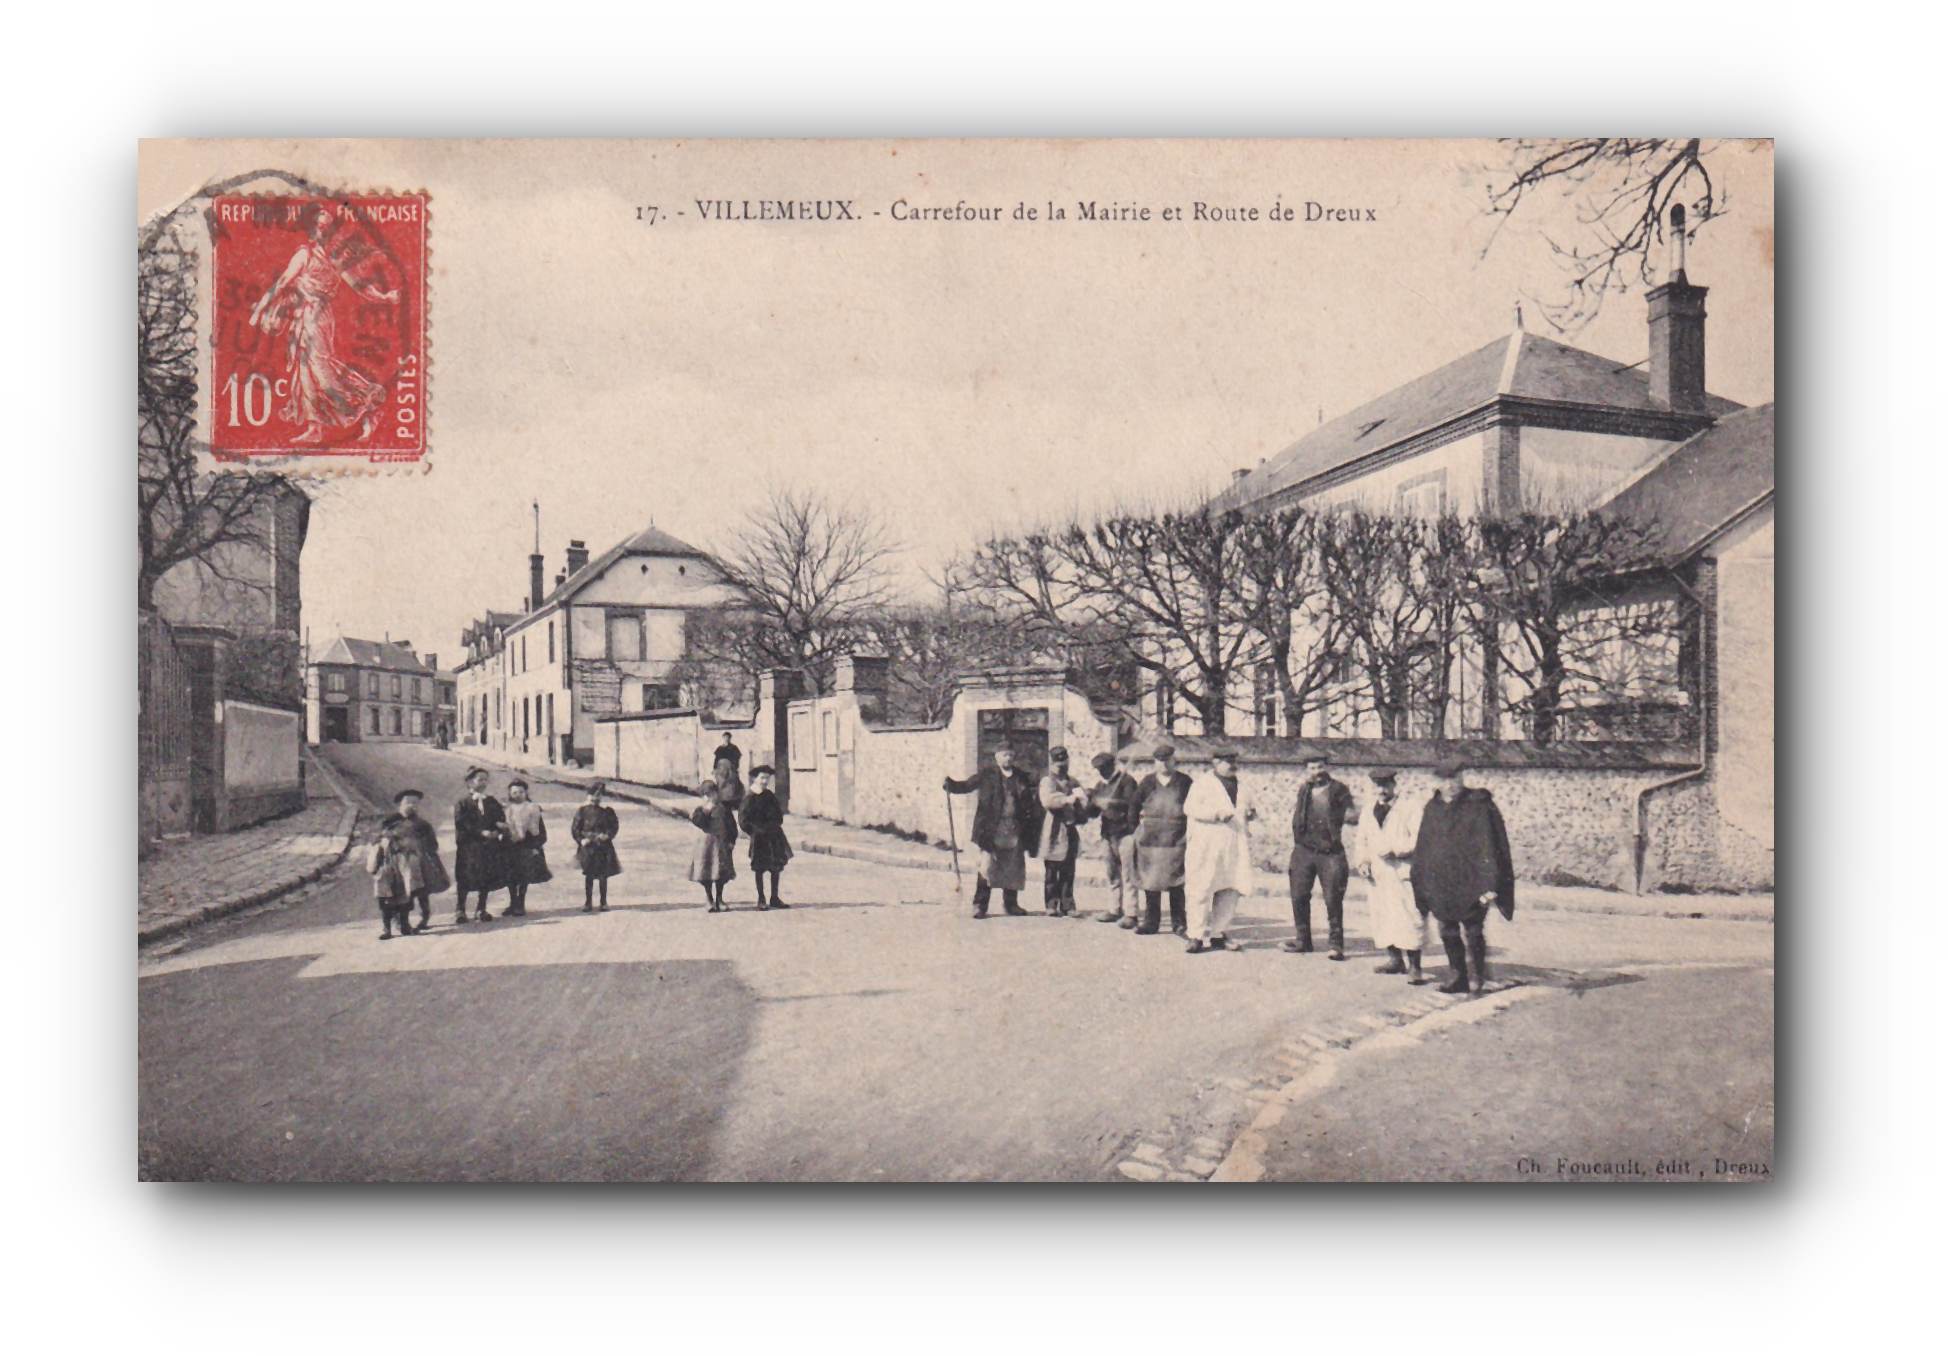 - VILLEMEUX - Carrefour de la Mairie et Route de Dreux - 06.1908 -